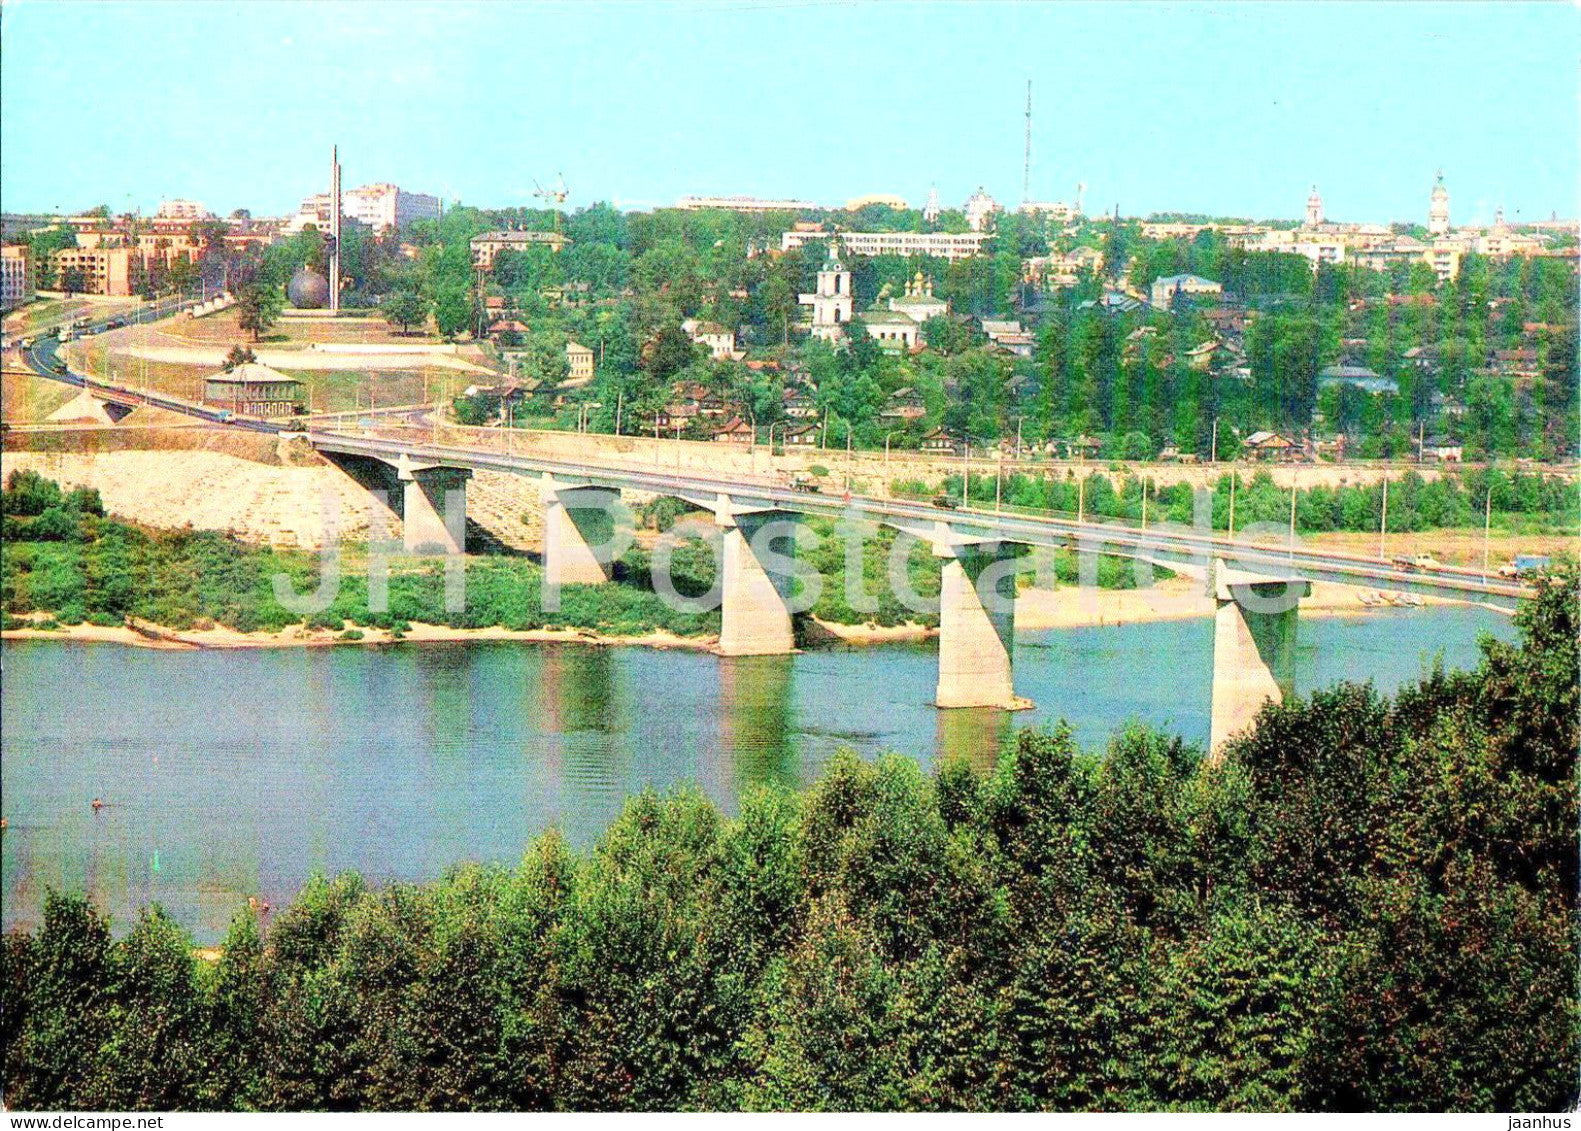 Kaluga - Bridge over Oka river - 1982 - Russia USSR - unused - JH Postcards